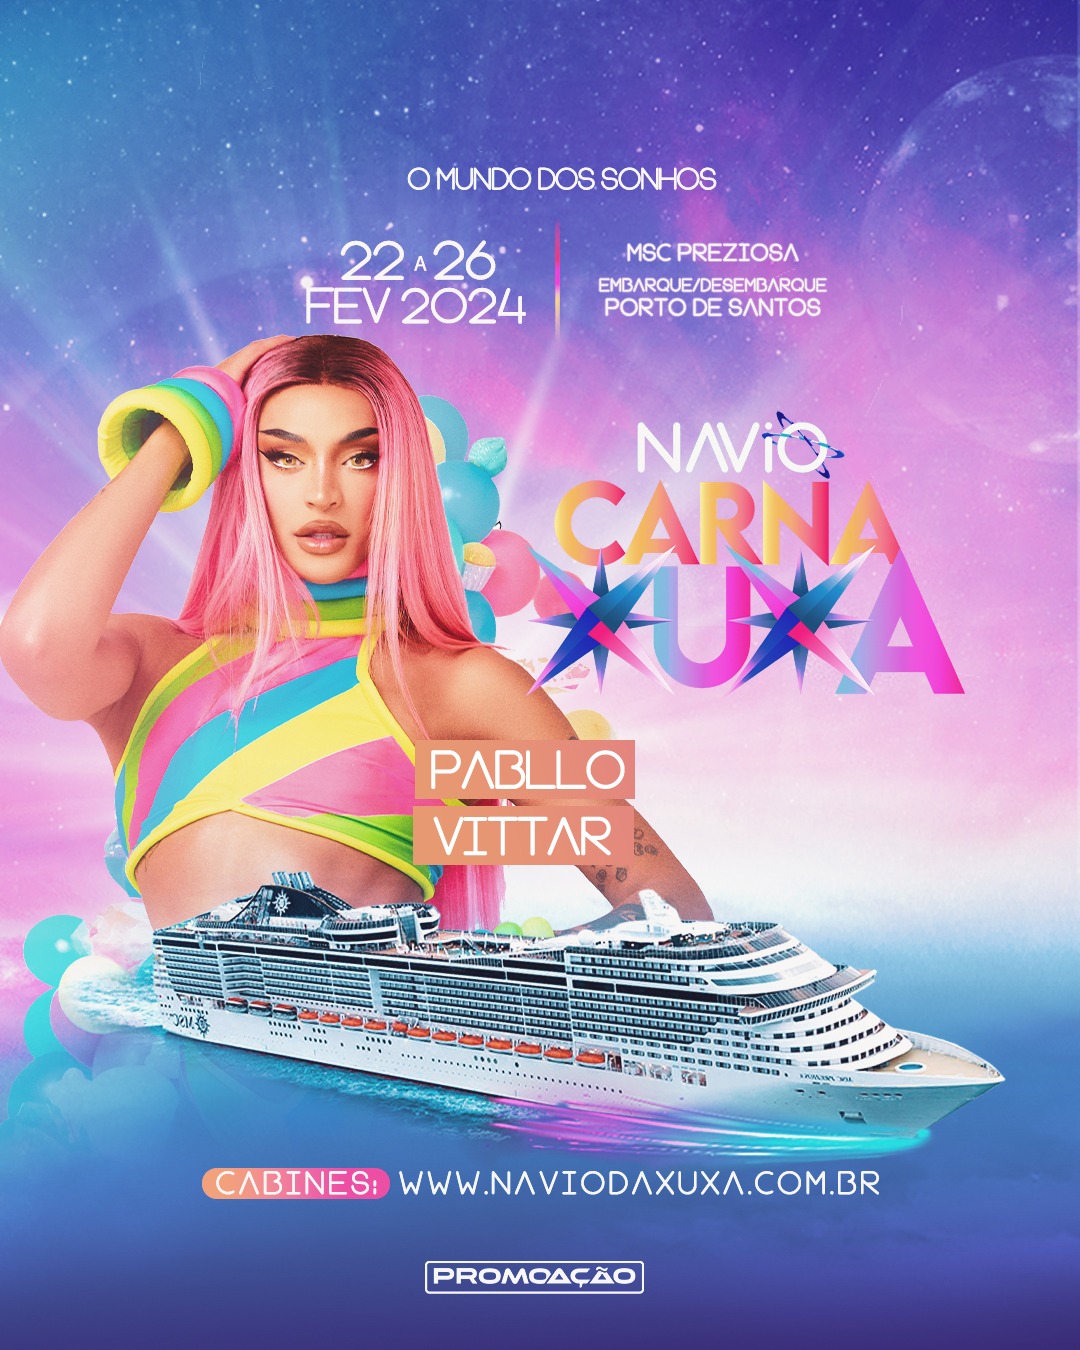 Pablo Vittar é mais uma atração confirmada para o navio "Carna Xuxa"